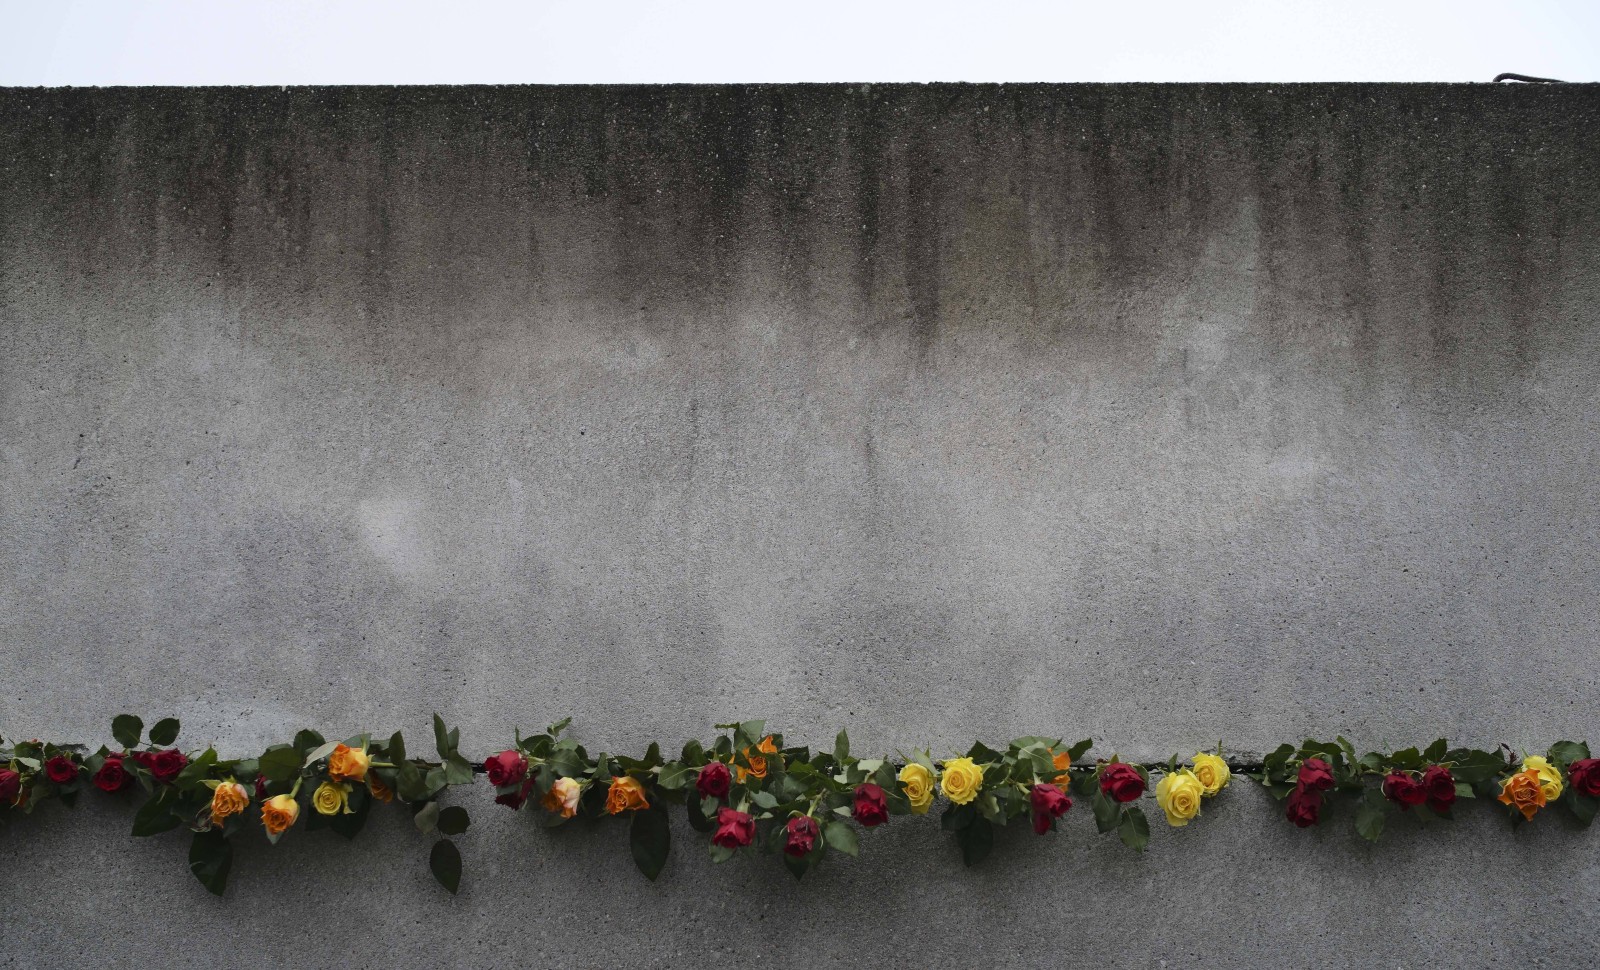 #11 La traversée du siècle: la Roumanie, loin derrière le mur de Berlin